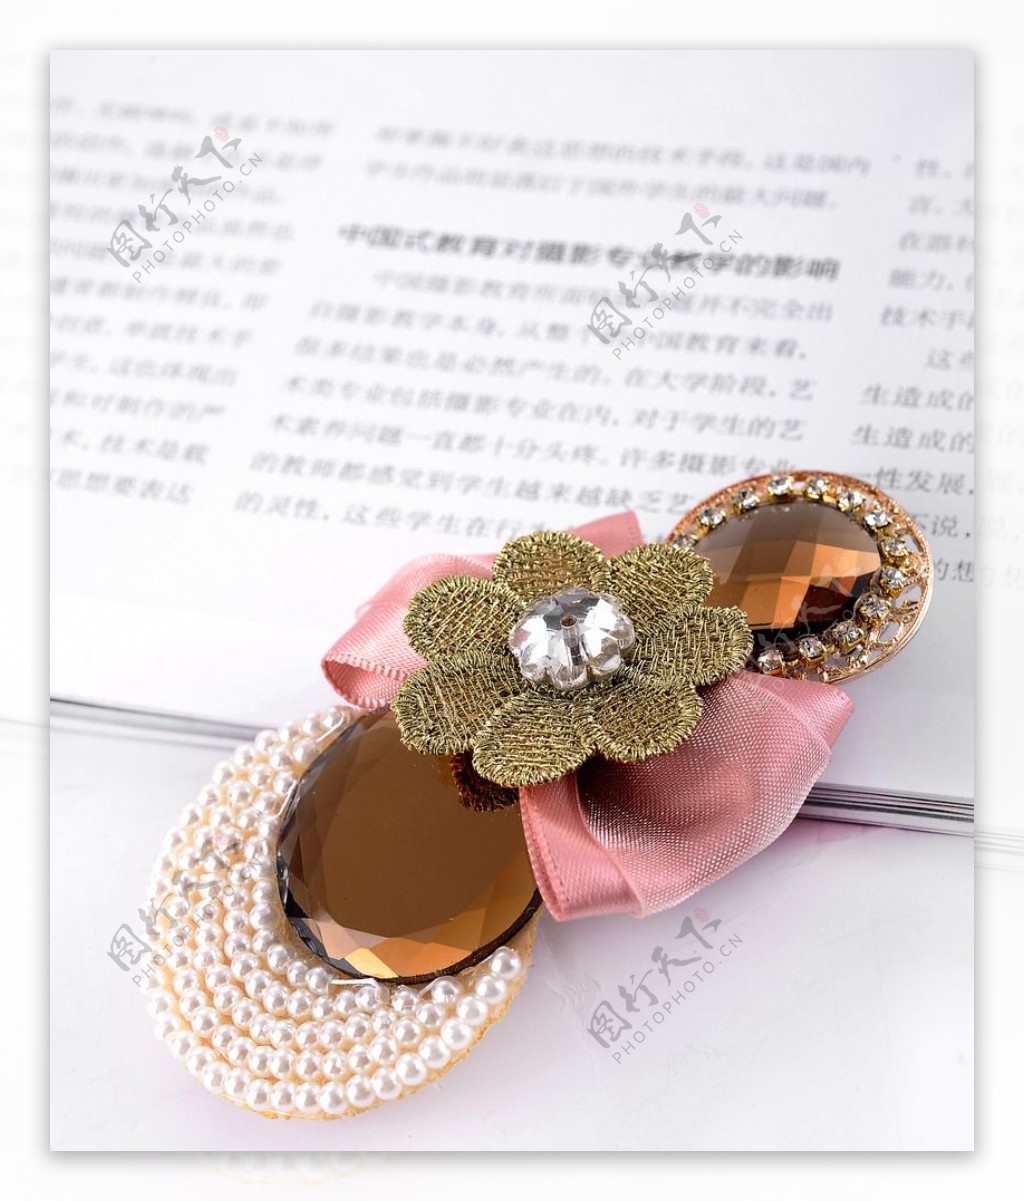 新款包邮花朵水晶发夹发卡头饰横夹弹簧夹送妈妈礼物饰品顶夹瑞丽_xuxiao_0807